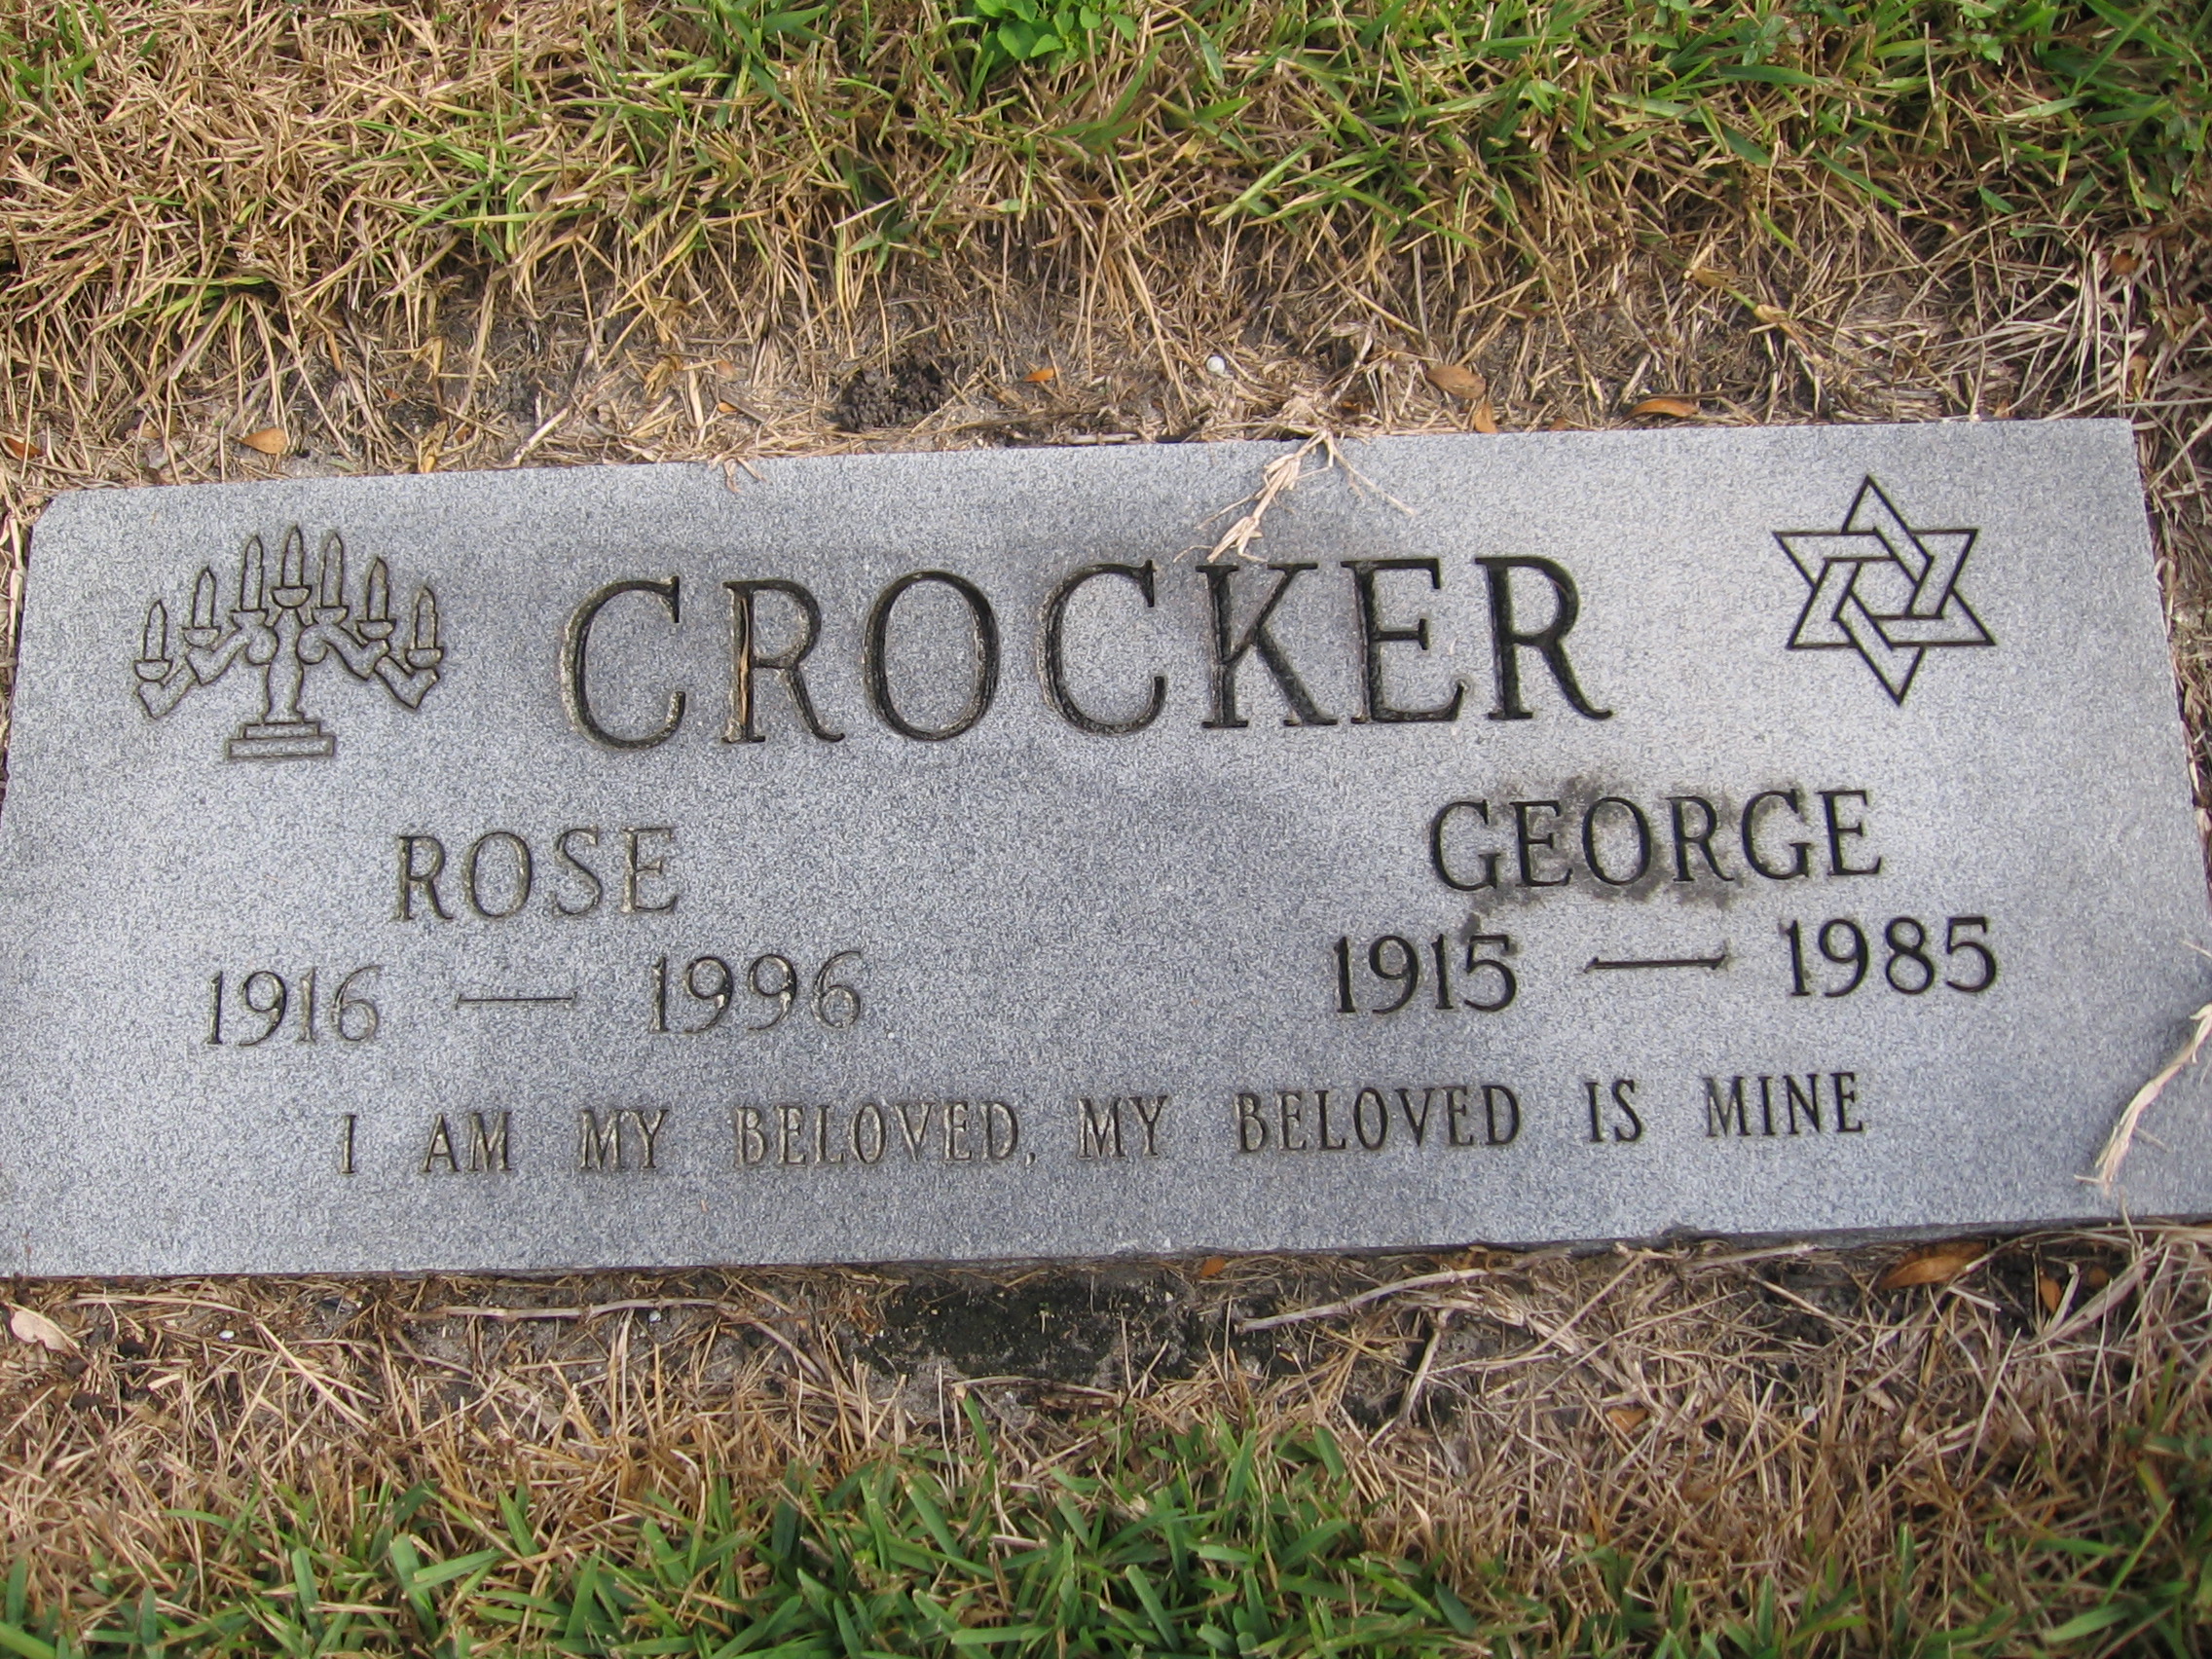 George Crocker